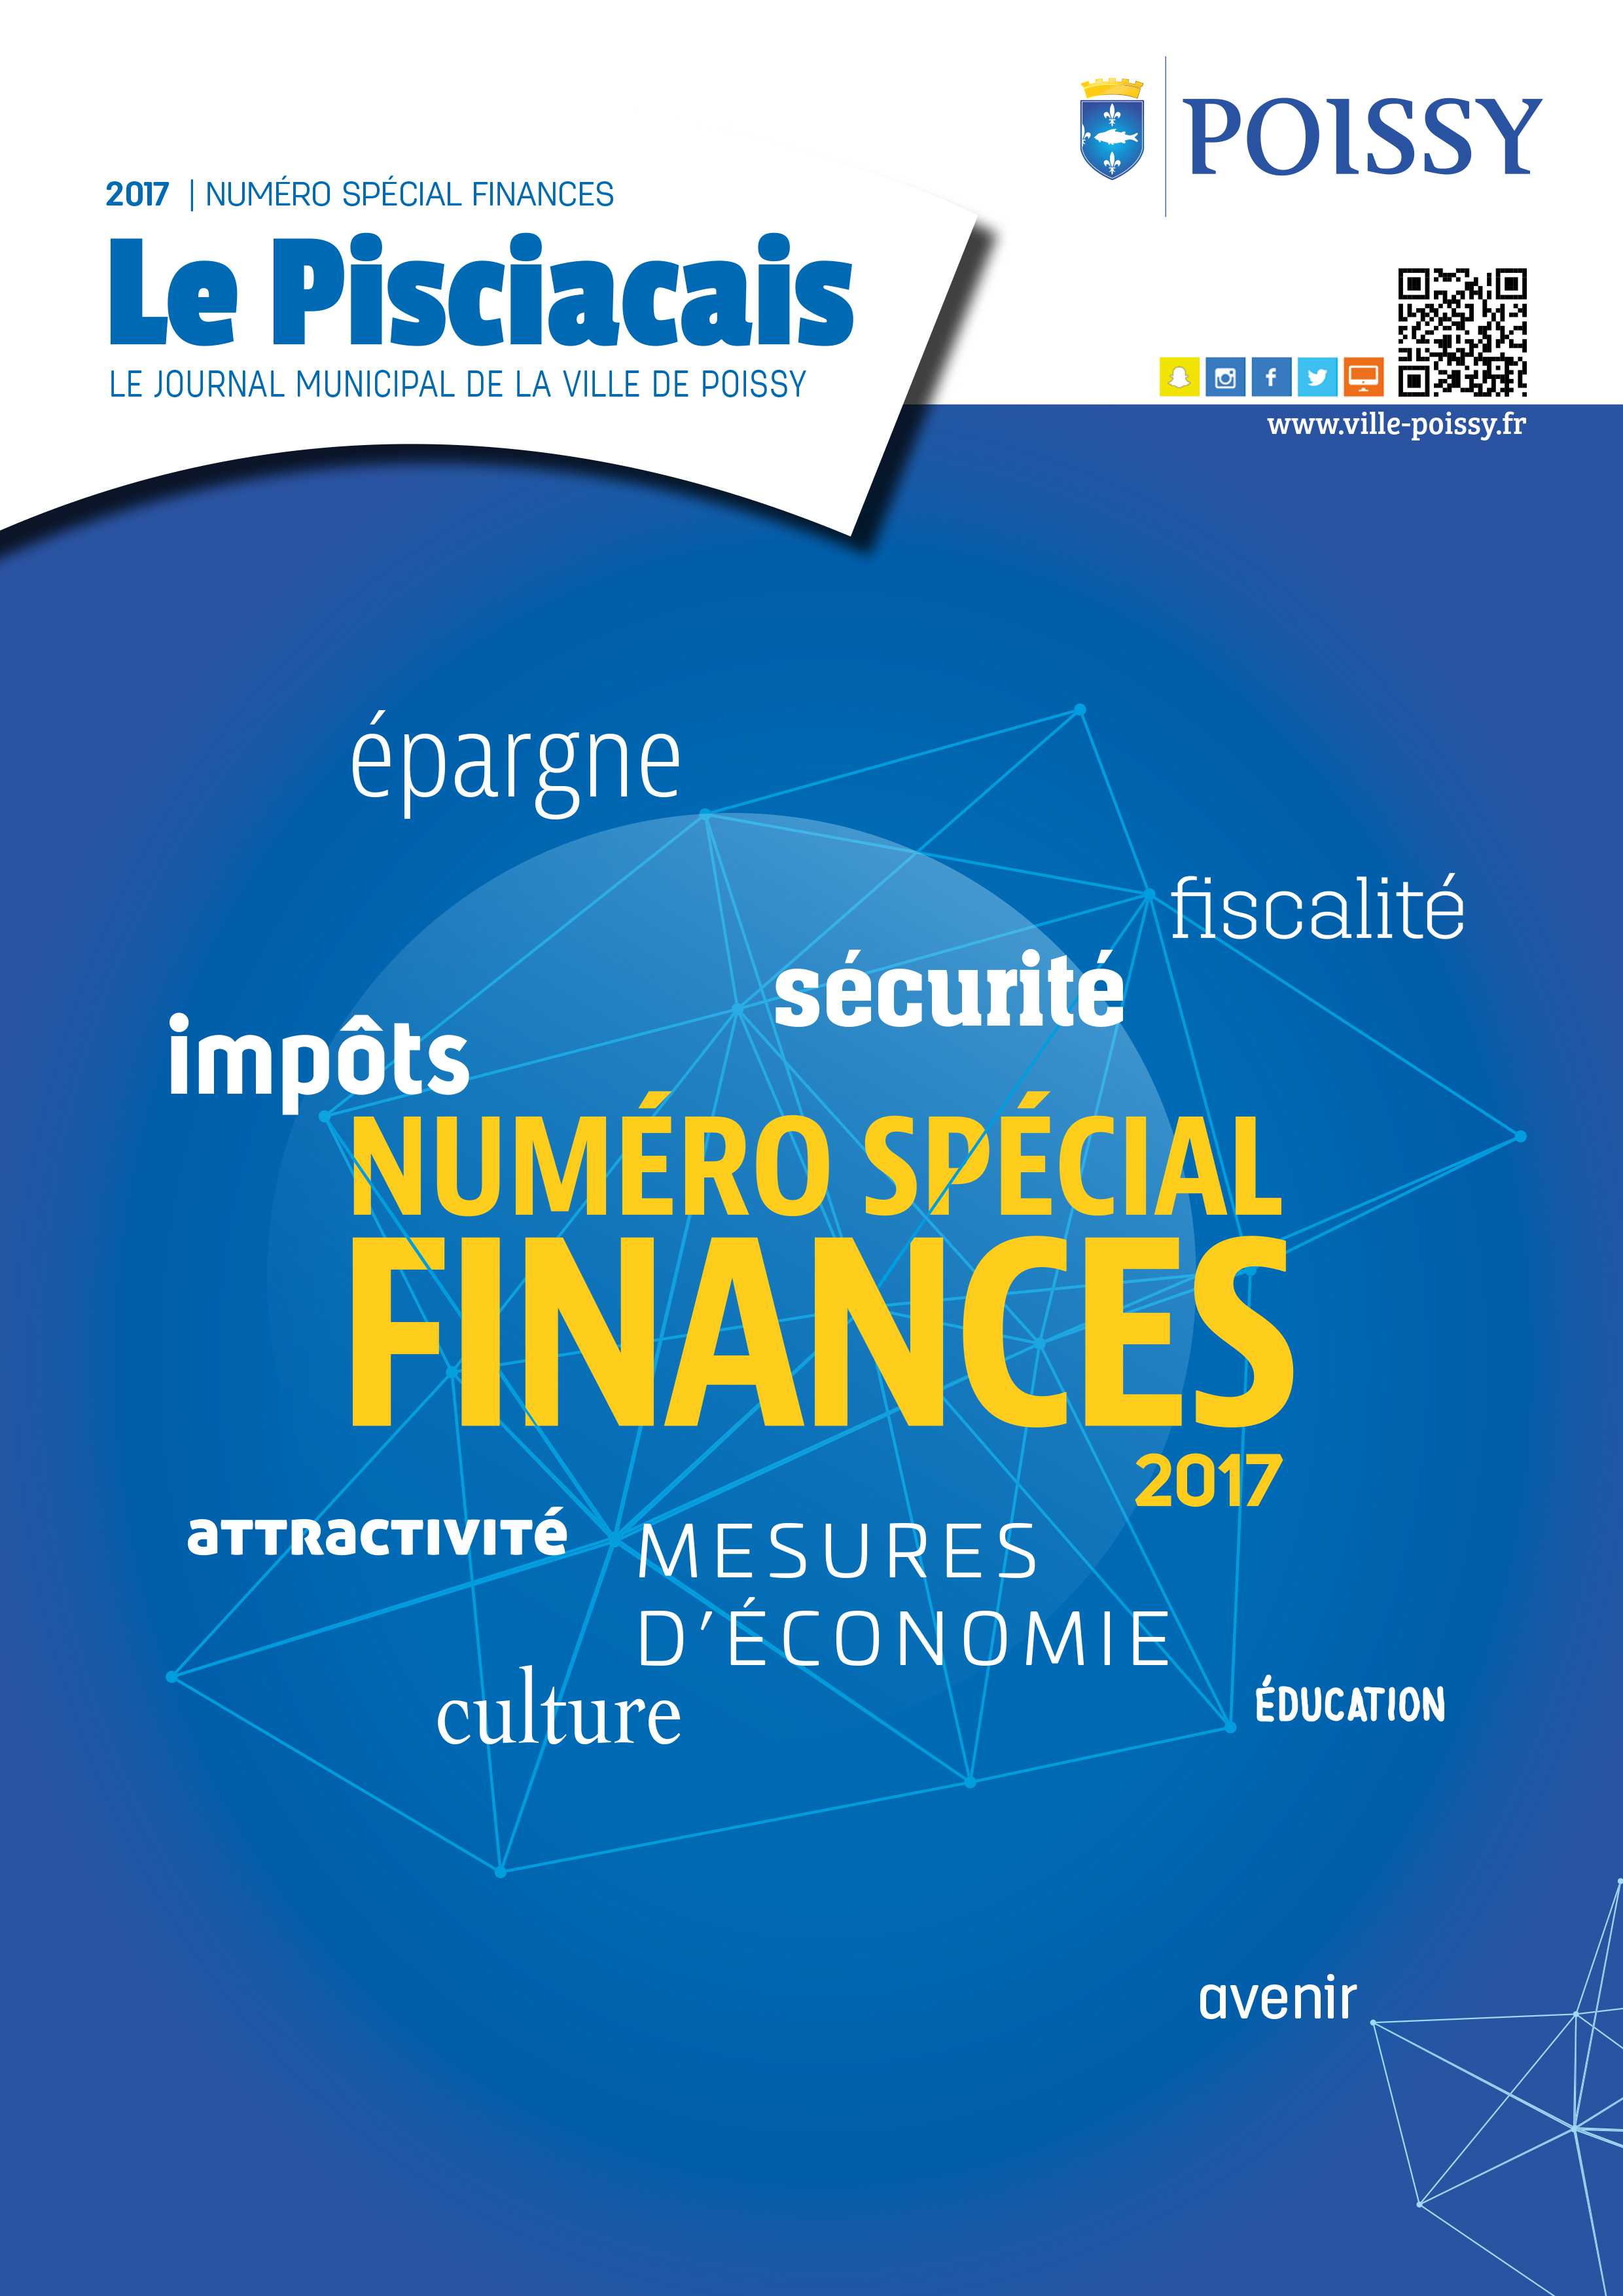 specialfinances2017